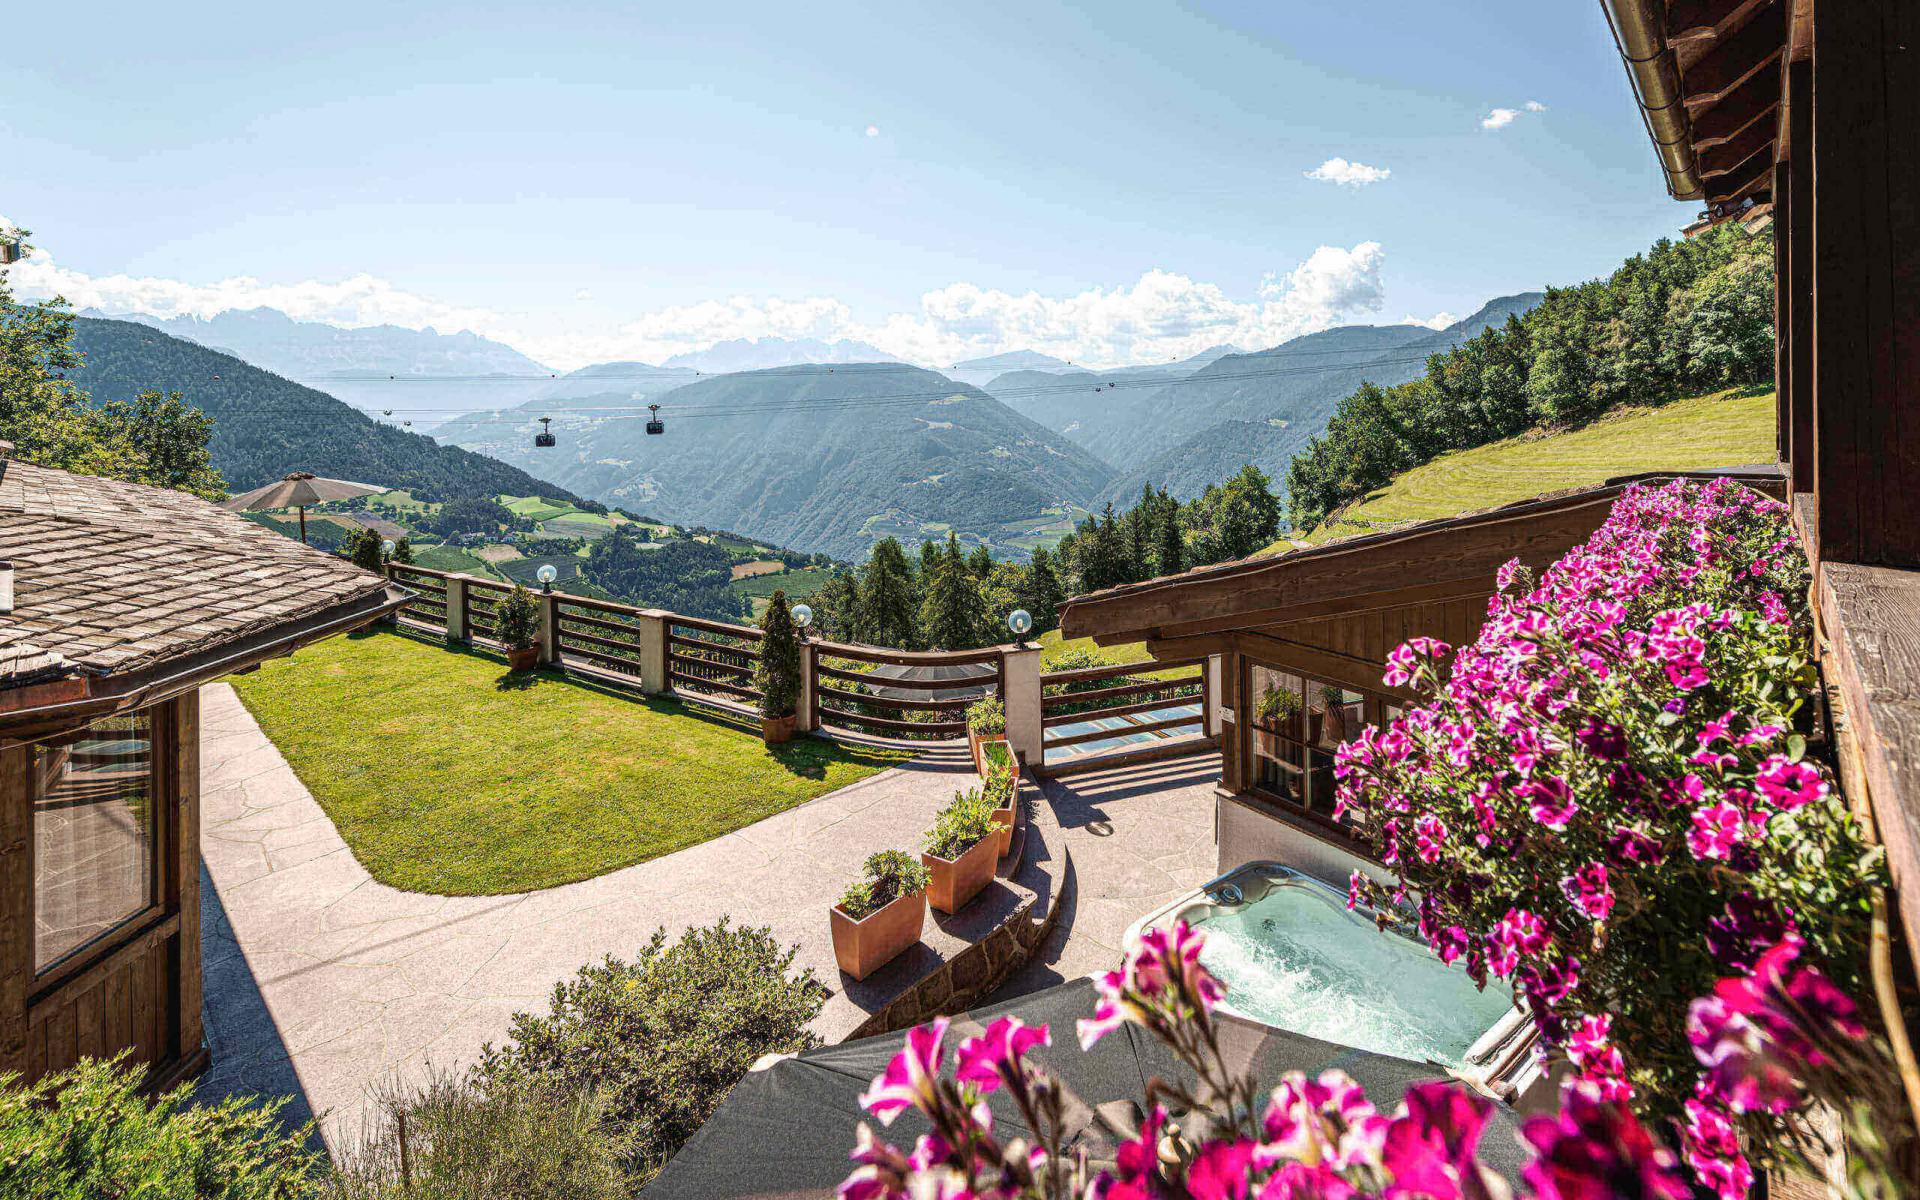 Ferientraum Foto Galerie Chalet Grumer Suites Spa Wellness Berurlaub in Südtirol